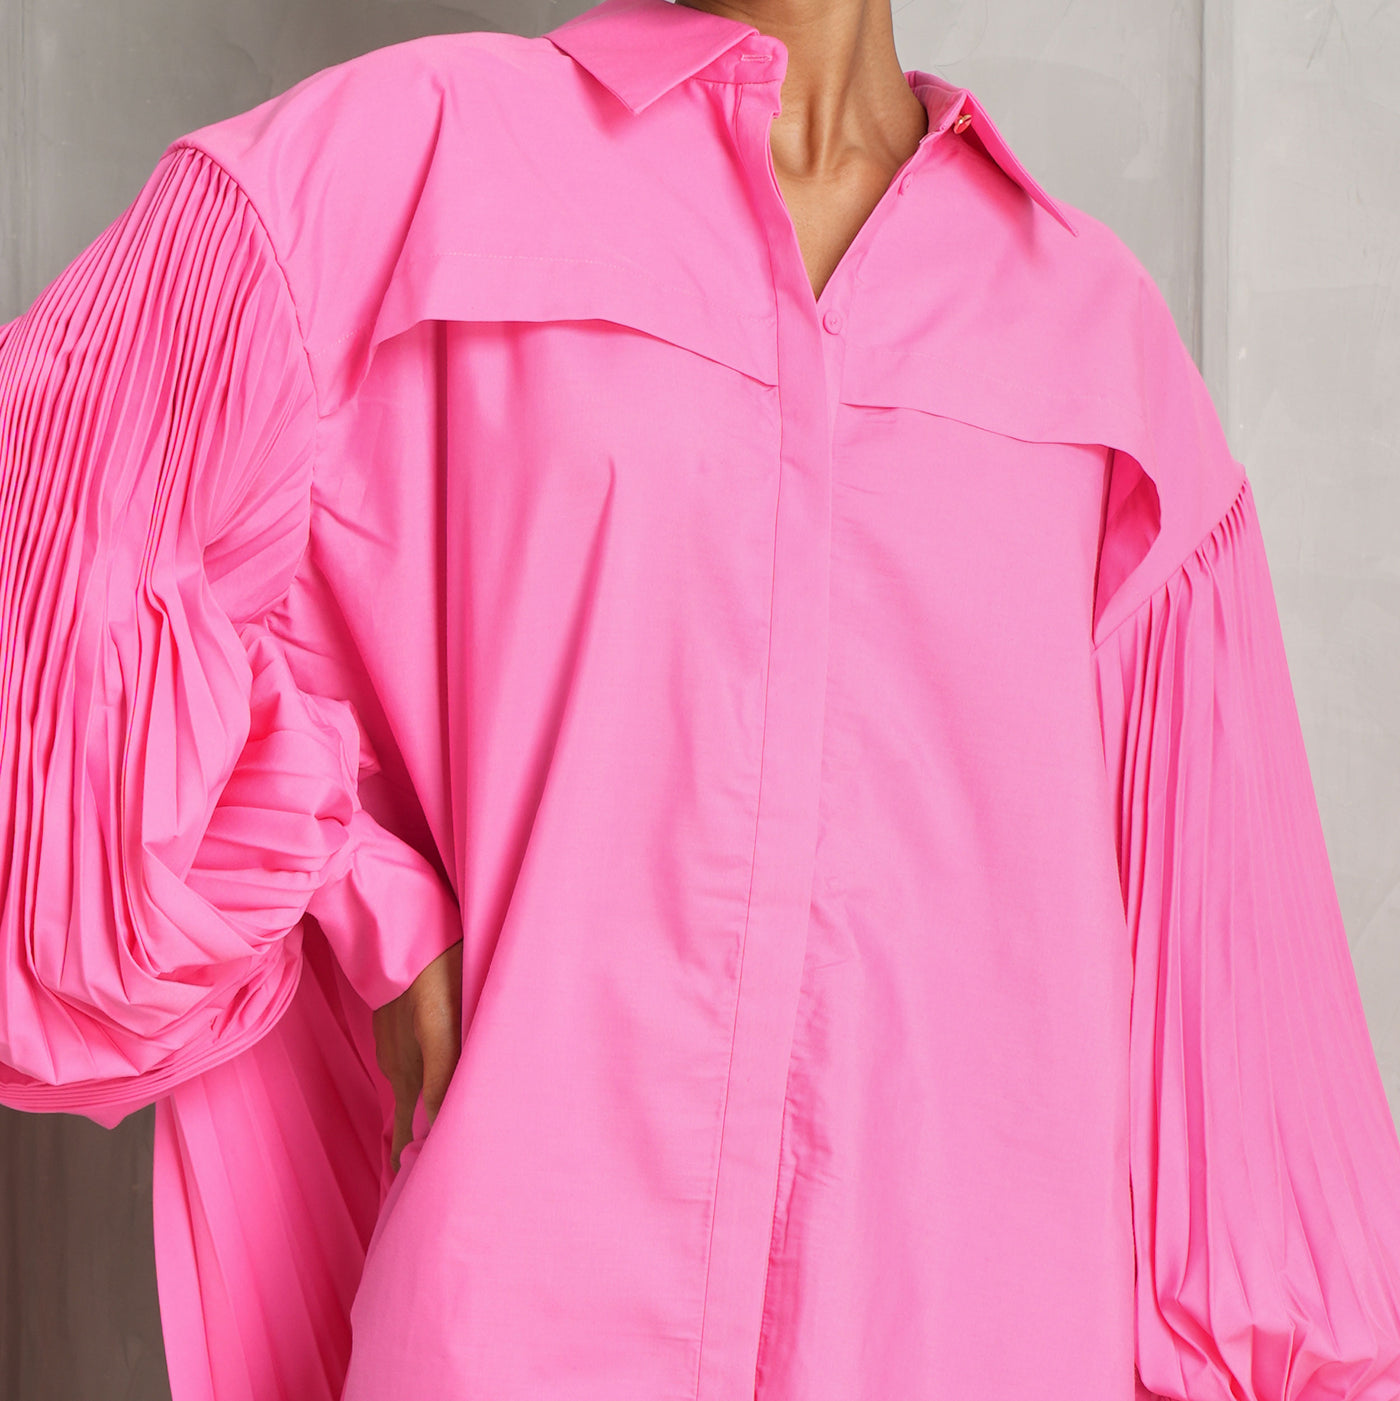 ACLER kirtling cotton pink shirt